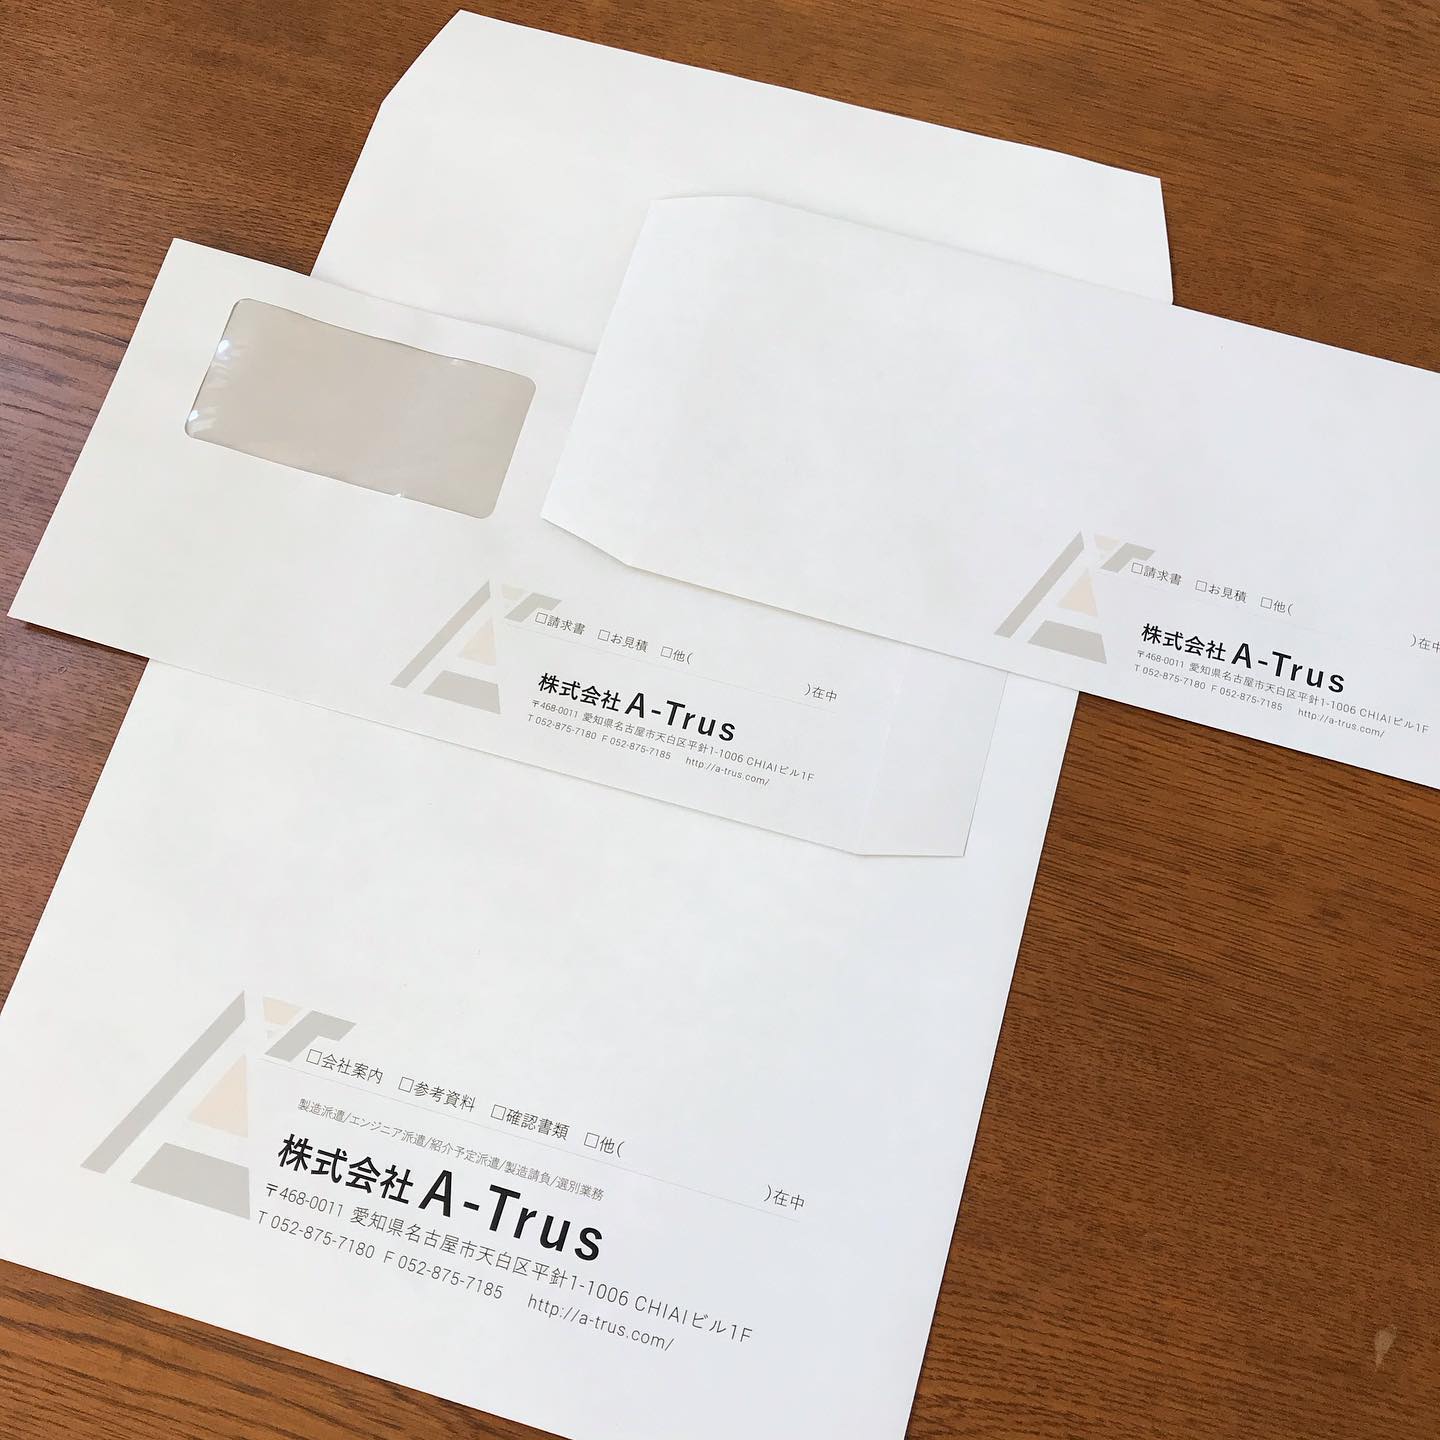 封筒3種盛り♪❶ 資料やカタログ、契約書などに、A4が折らずに入る、角2サイズ。❷ A4が三つ折りで入る基本形、長3サイズ。❸ 請求書など用に、宛名を印刷しなくて済む、窓付きの長3サイズ。ビジネス向け基本3セットです#封筒デザイン #オリジナル封筒